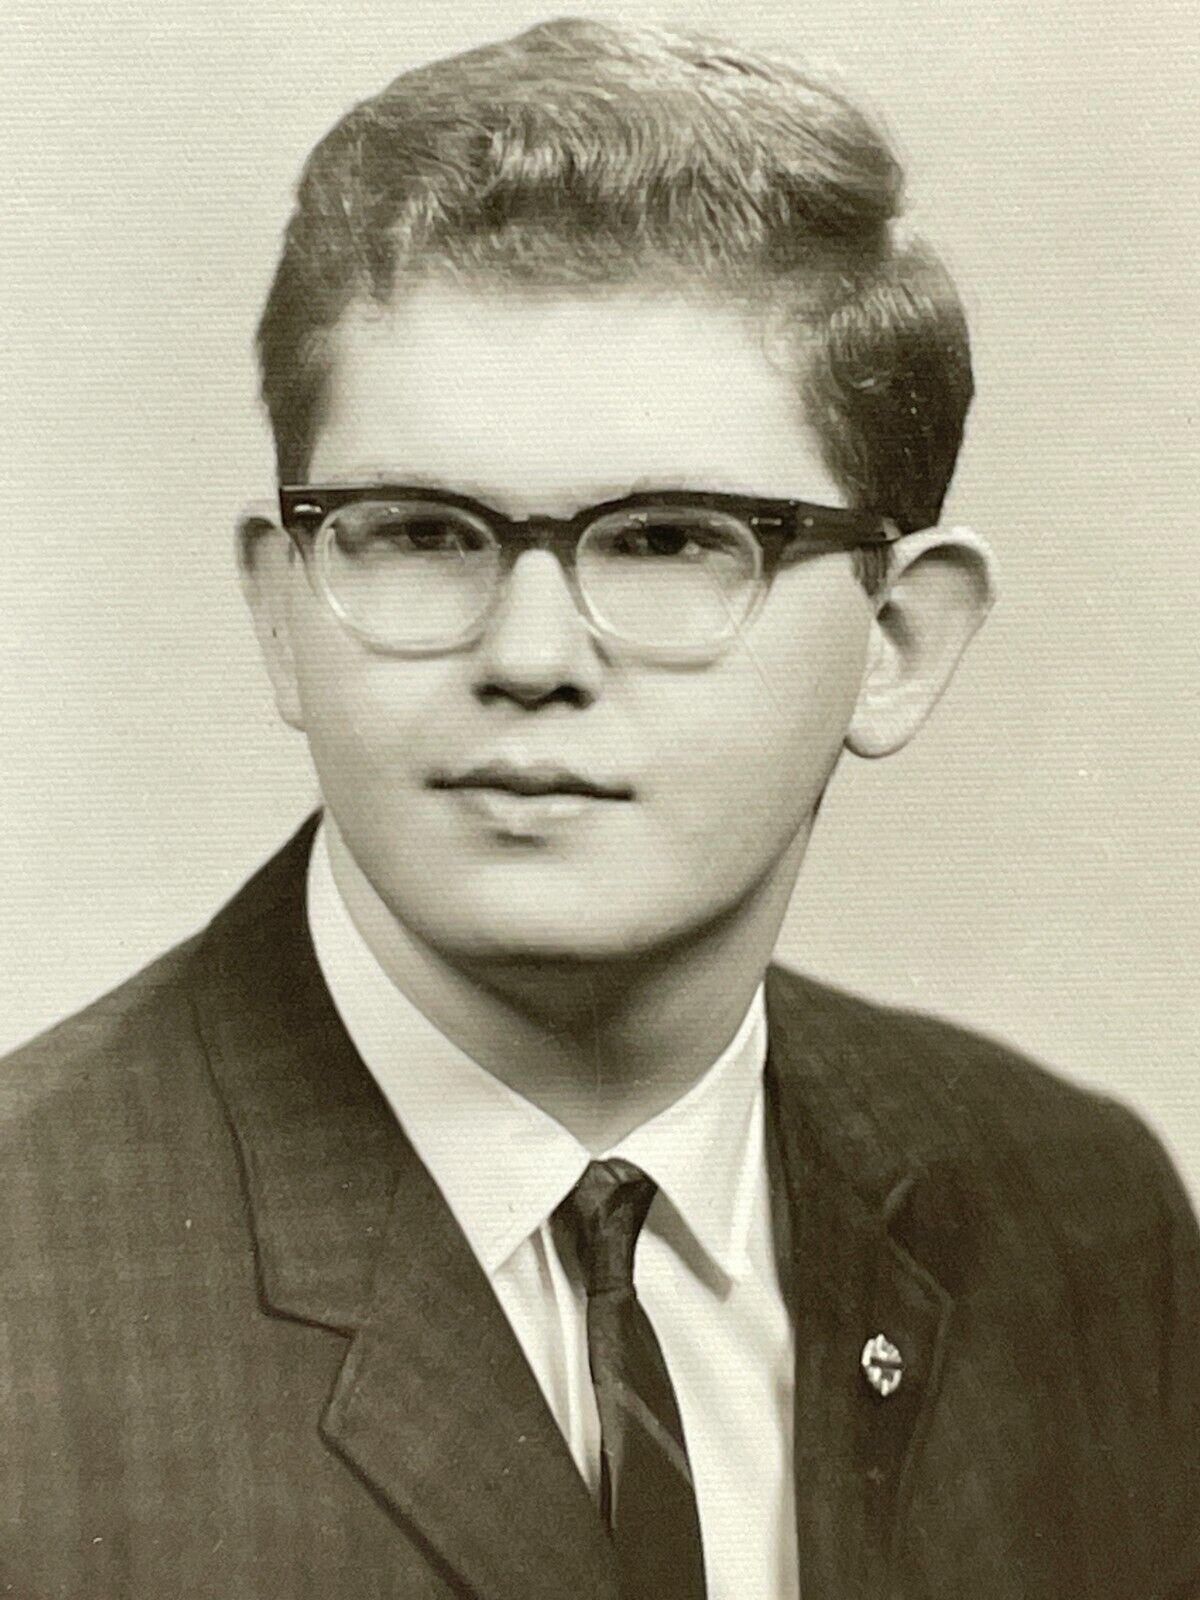 NF Photograph Boy Young Man School Class Photo 1950-60's Portrait